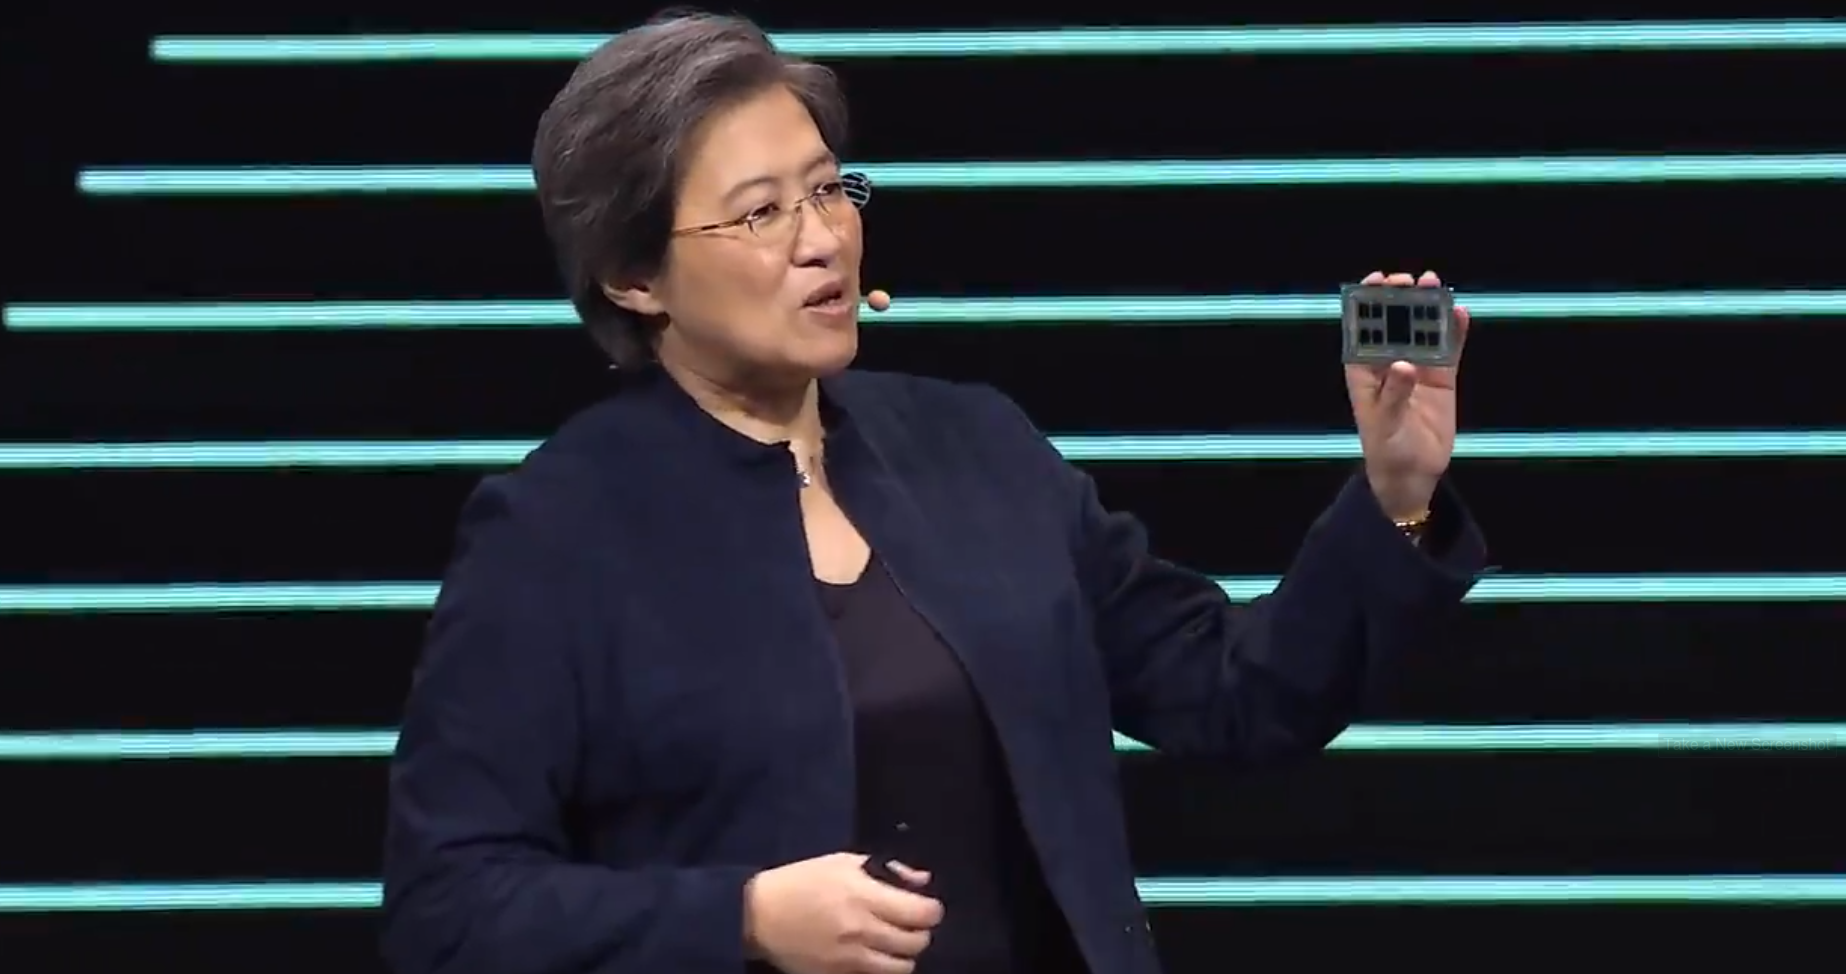 Intel recupera participação de mercado de CPUs da AMD pela primeira vez em 3 anos